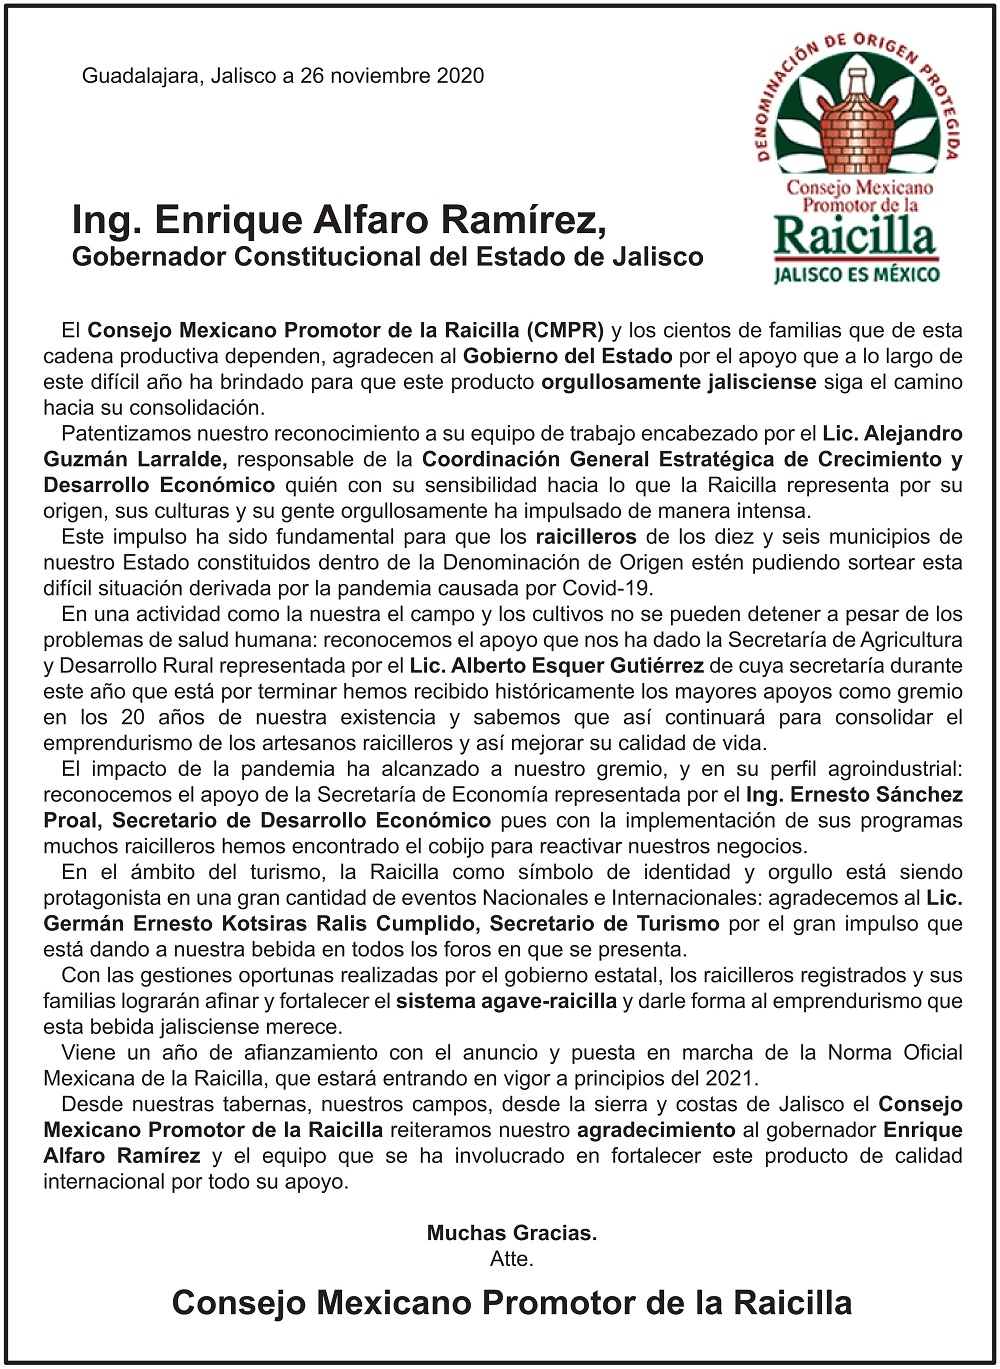 Ing. Enrique Alfaro Ramírez, Gobernador Constitucional del Estado de Jalisco: